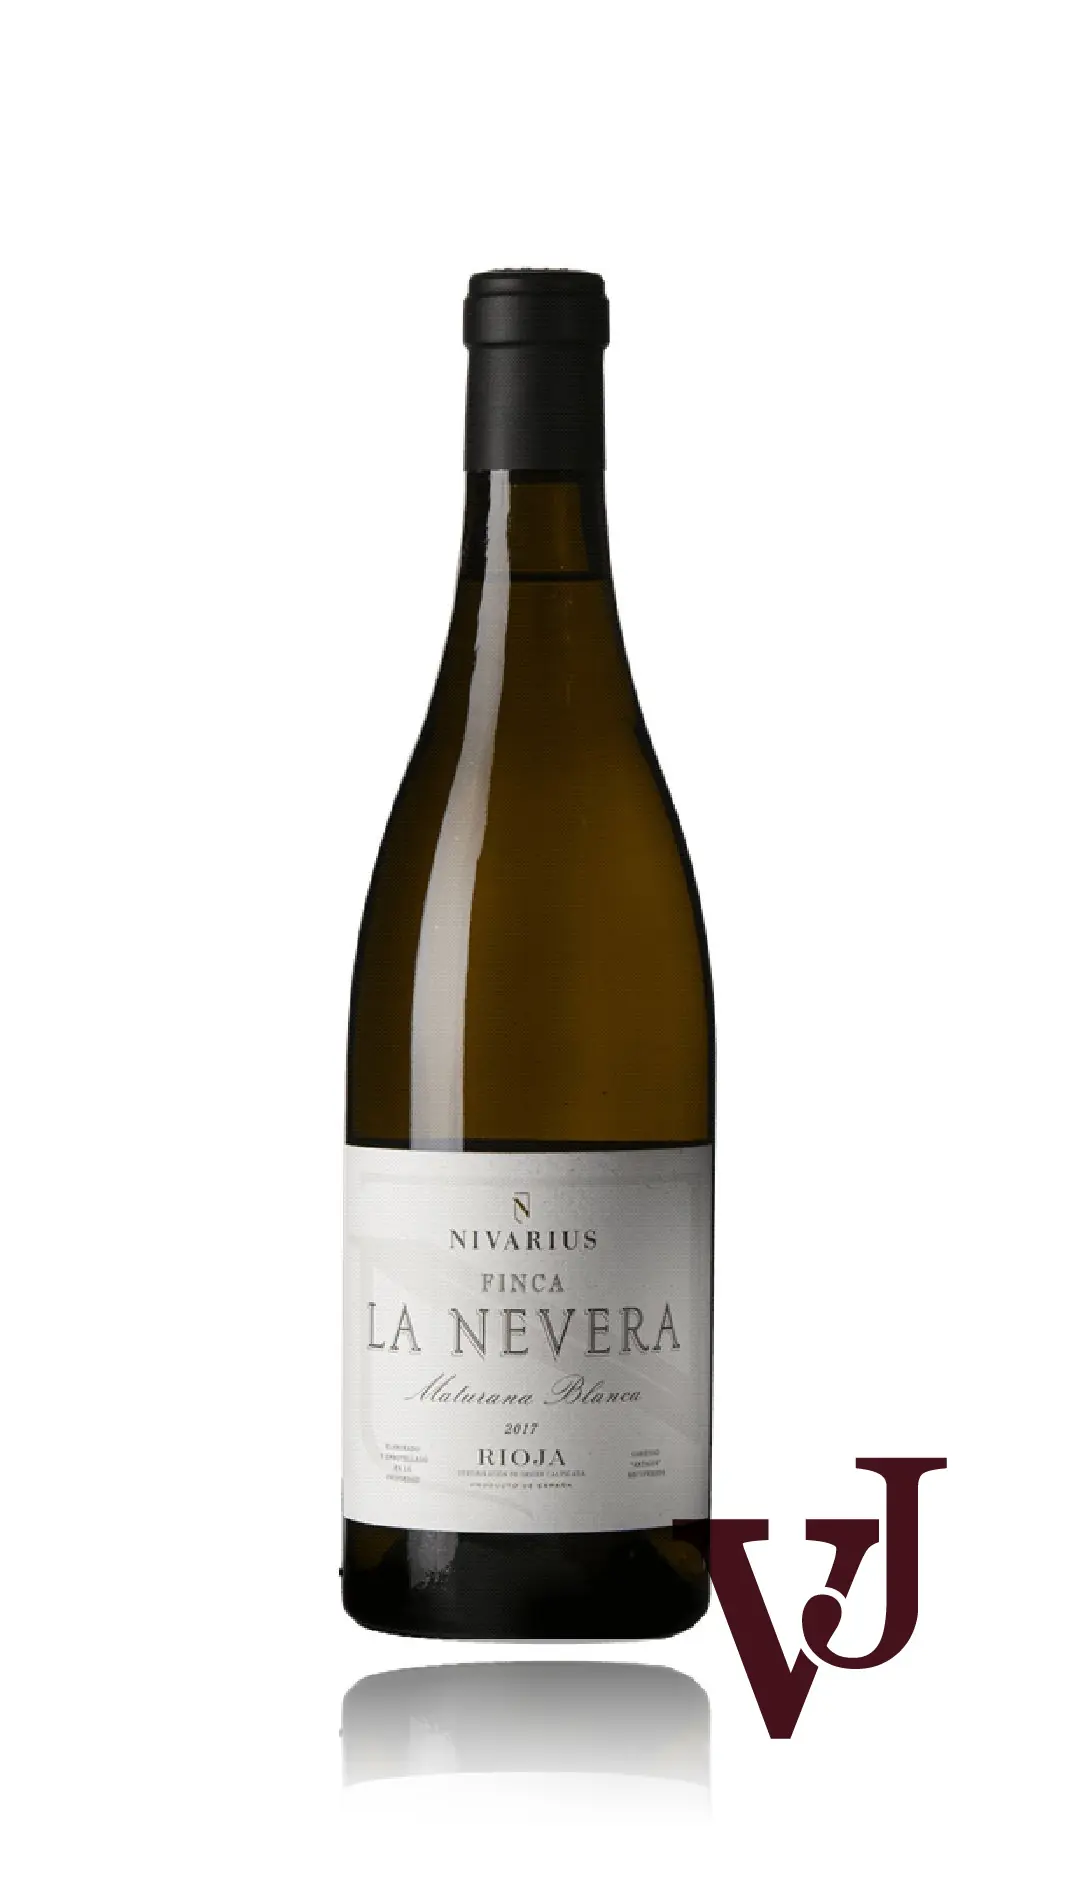 Vitt Vin - Finca La Nevera Maturana Blanca Nivarius 2017 artikel nummer 1304601 från producenten Bodegas Nivarius från området Spanien - Vinjournalen.se